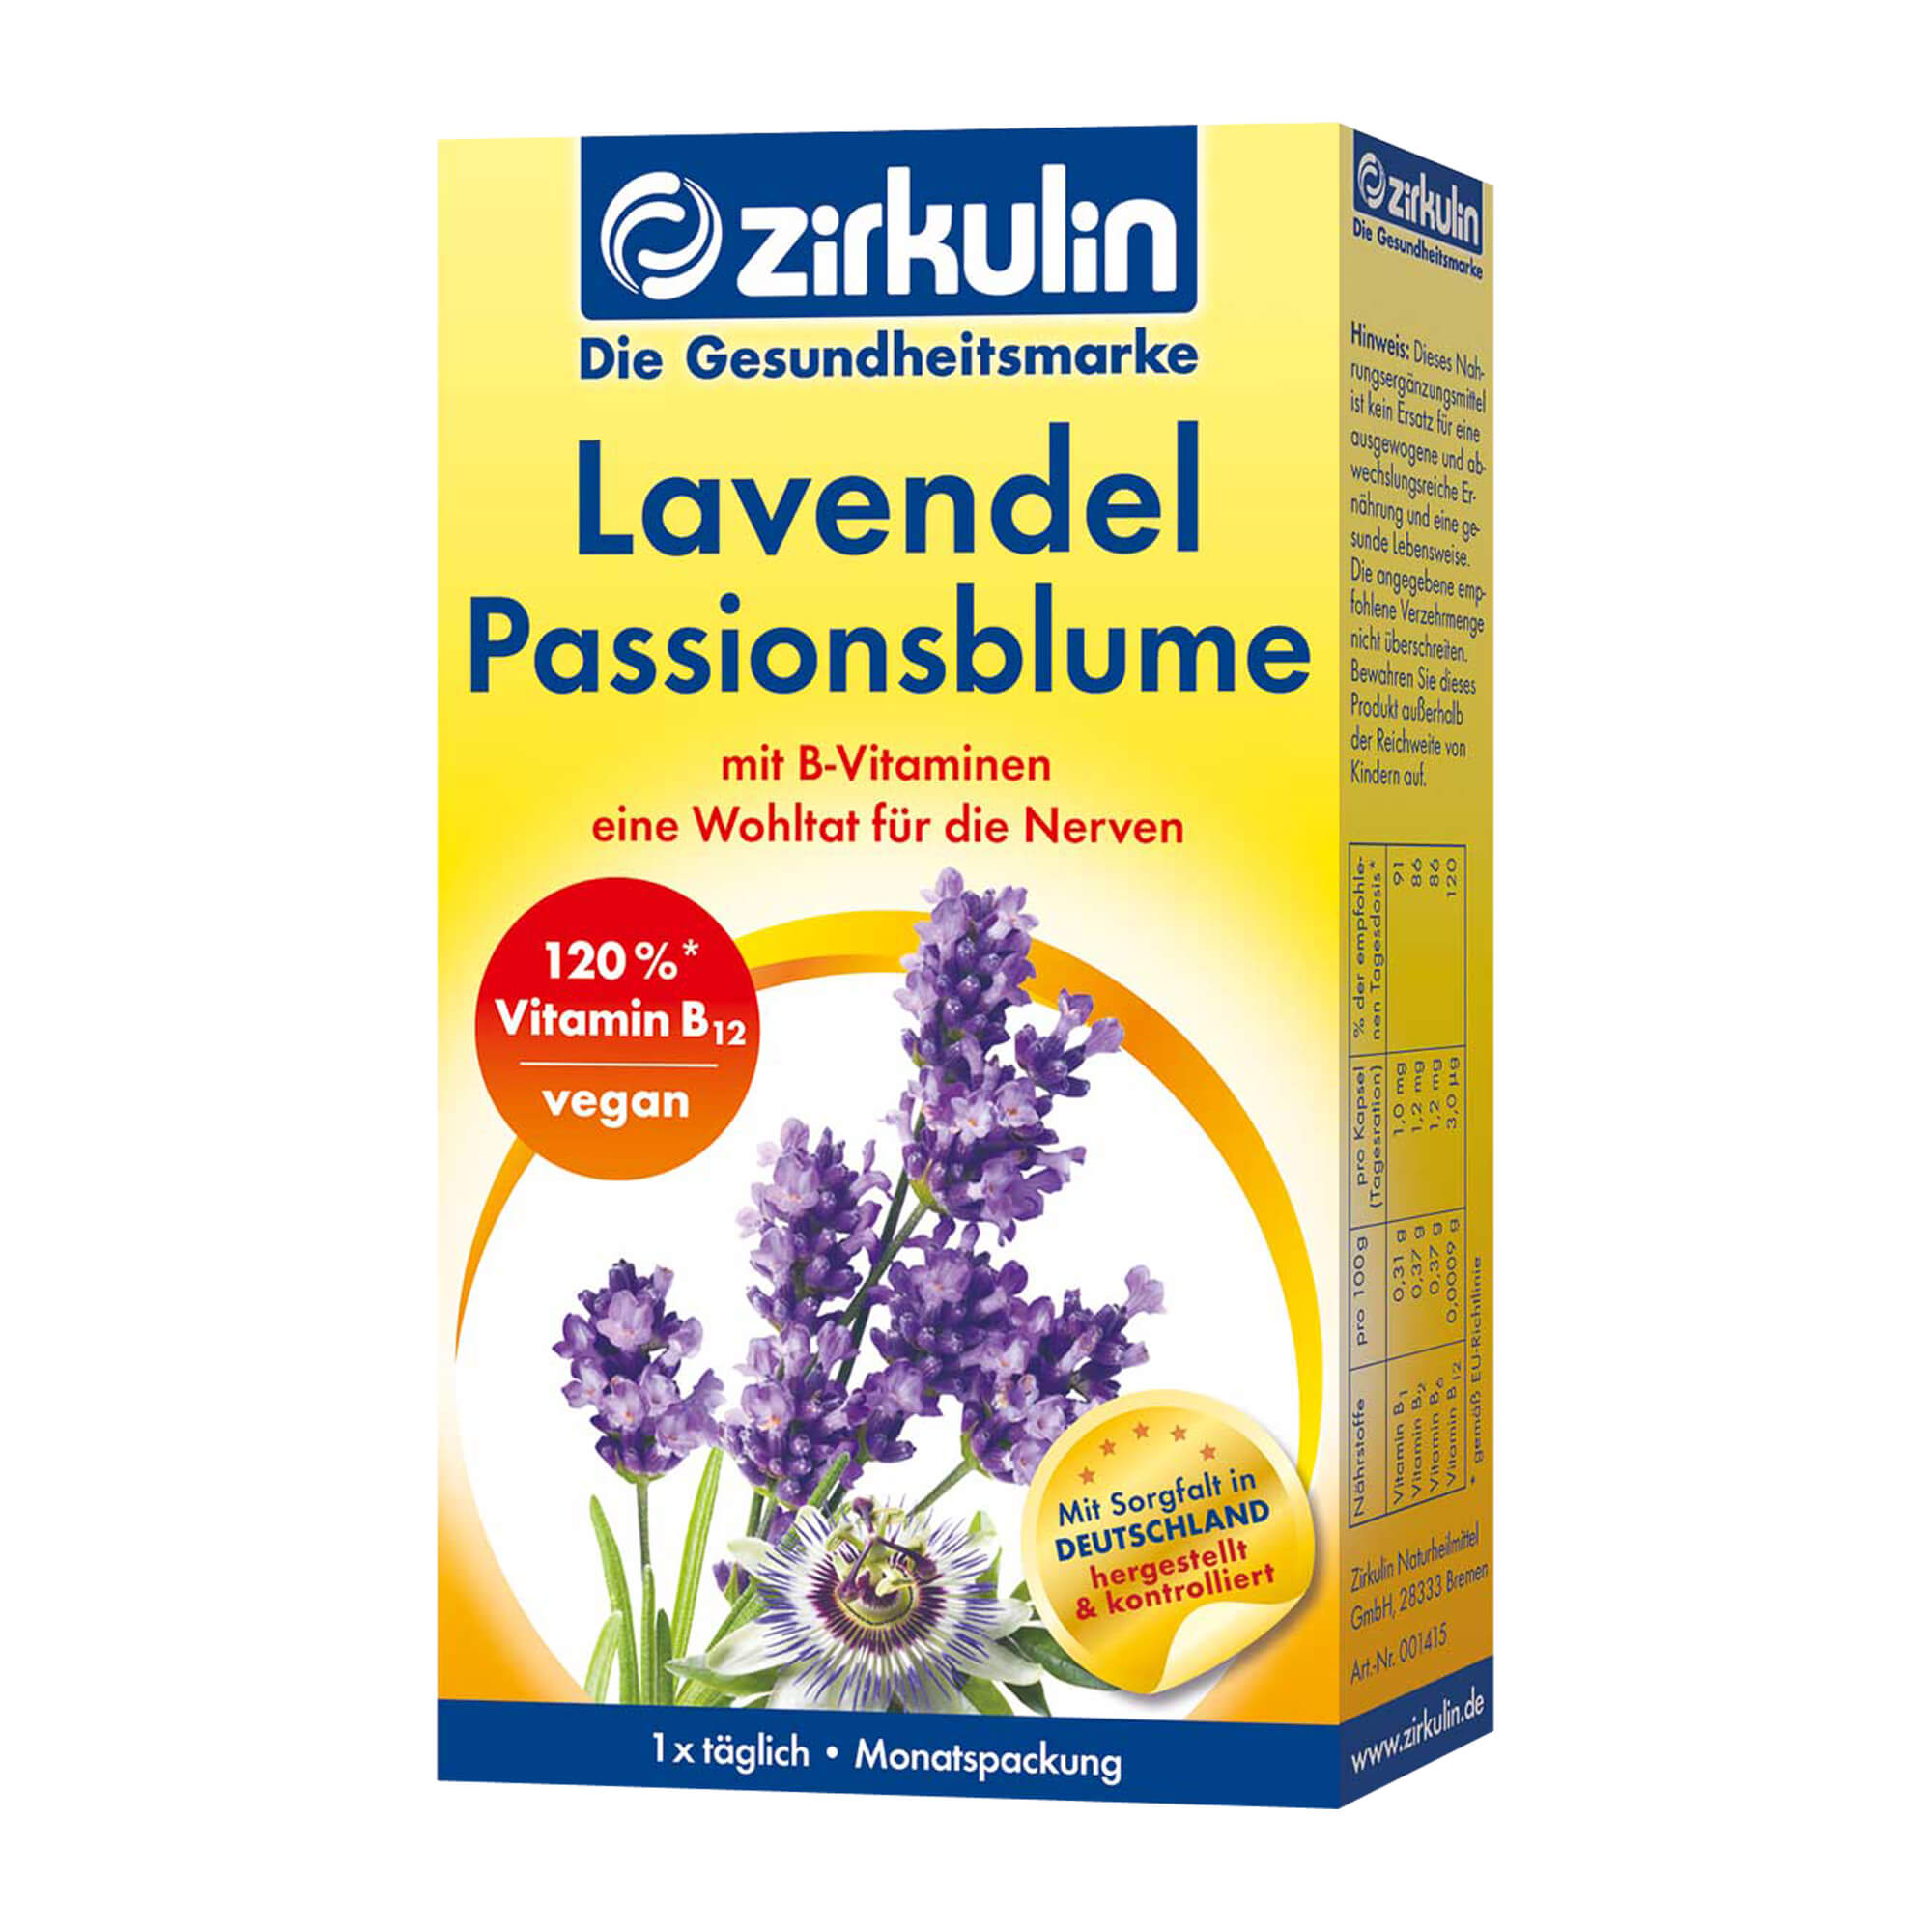 Nahrungsergänzungsmittel mit B-Vitaminen, Lavendel und Passionsblume.